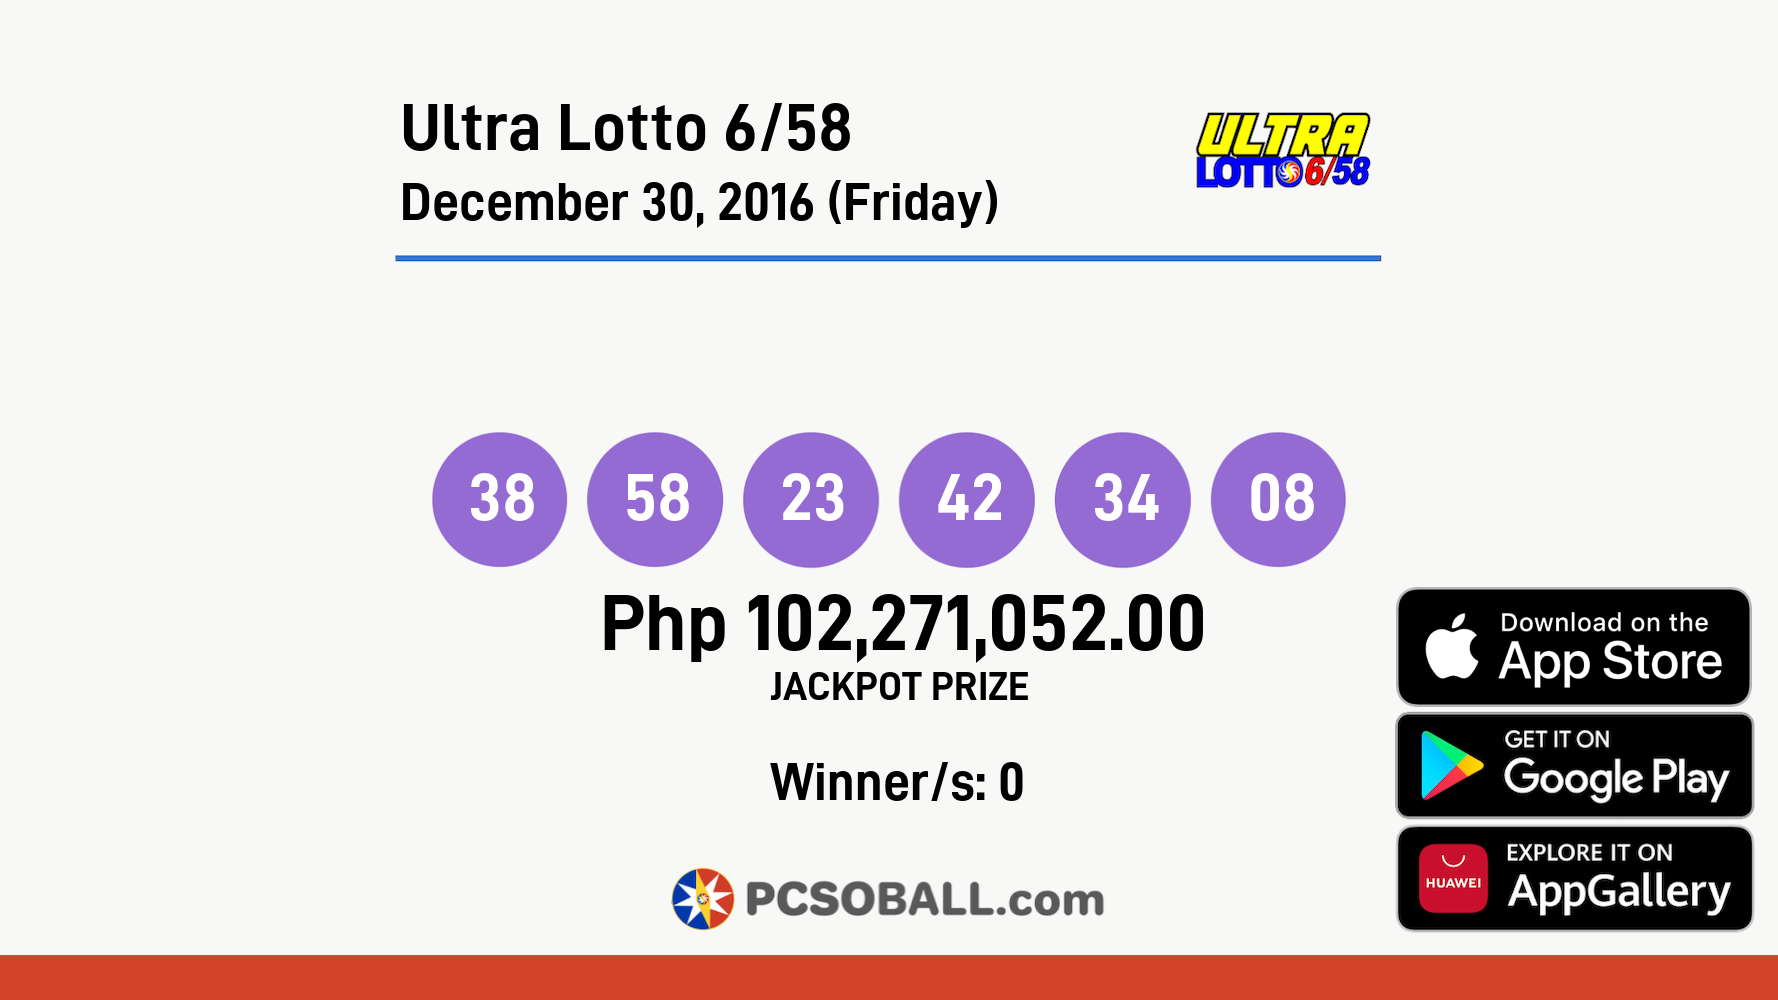 Ultra Lotto 6/58 December 30, 2016 (Friday) Result